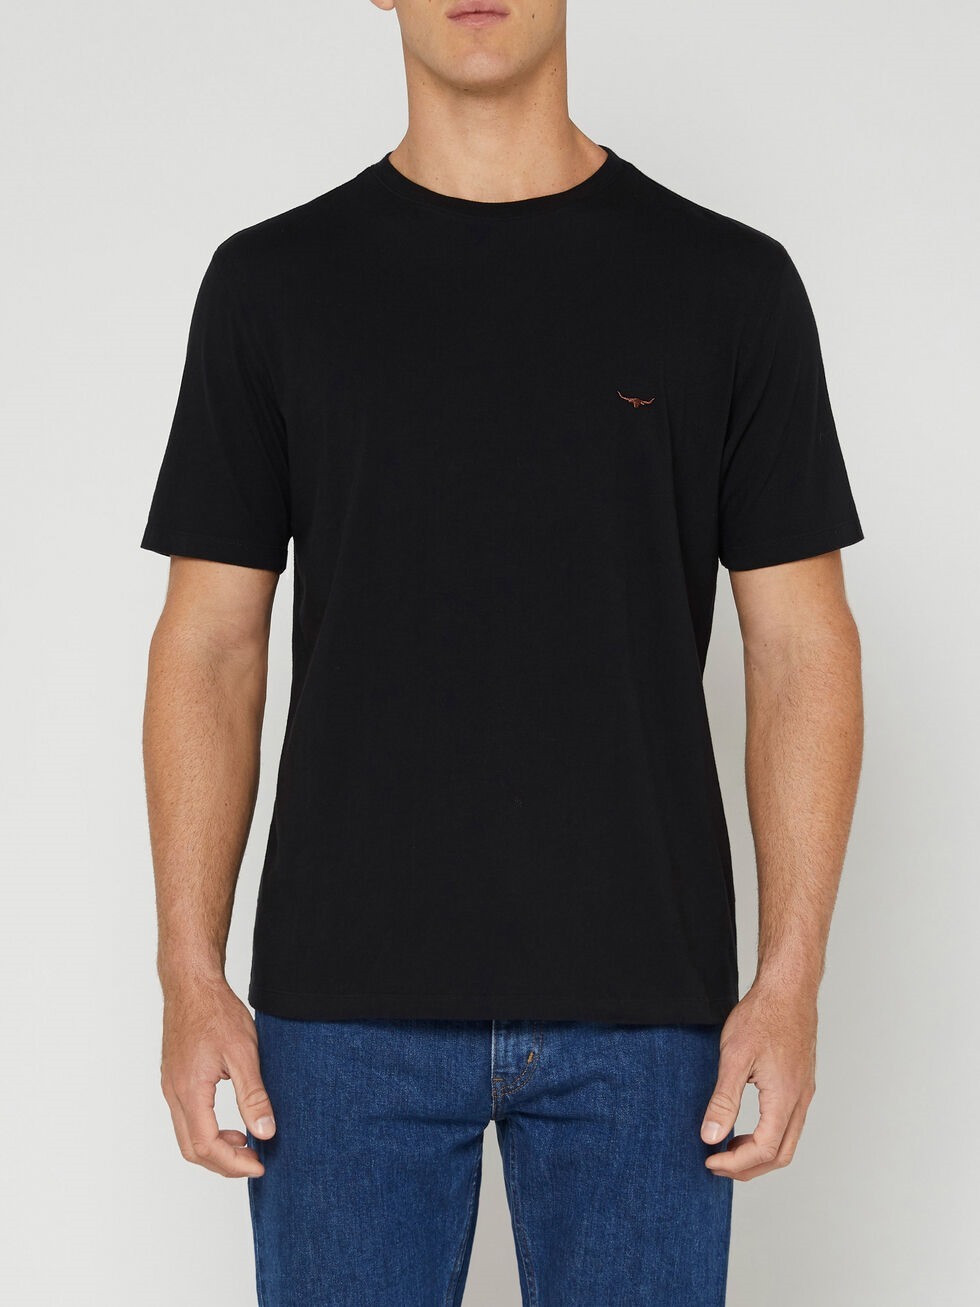 RM Williams Parson T-Shirt Black | Port Phillip Shop